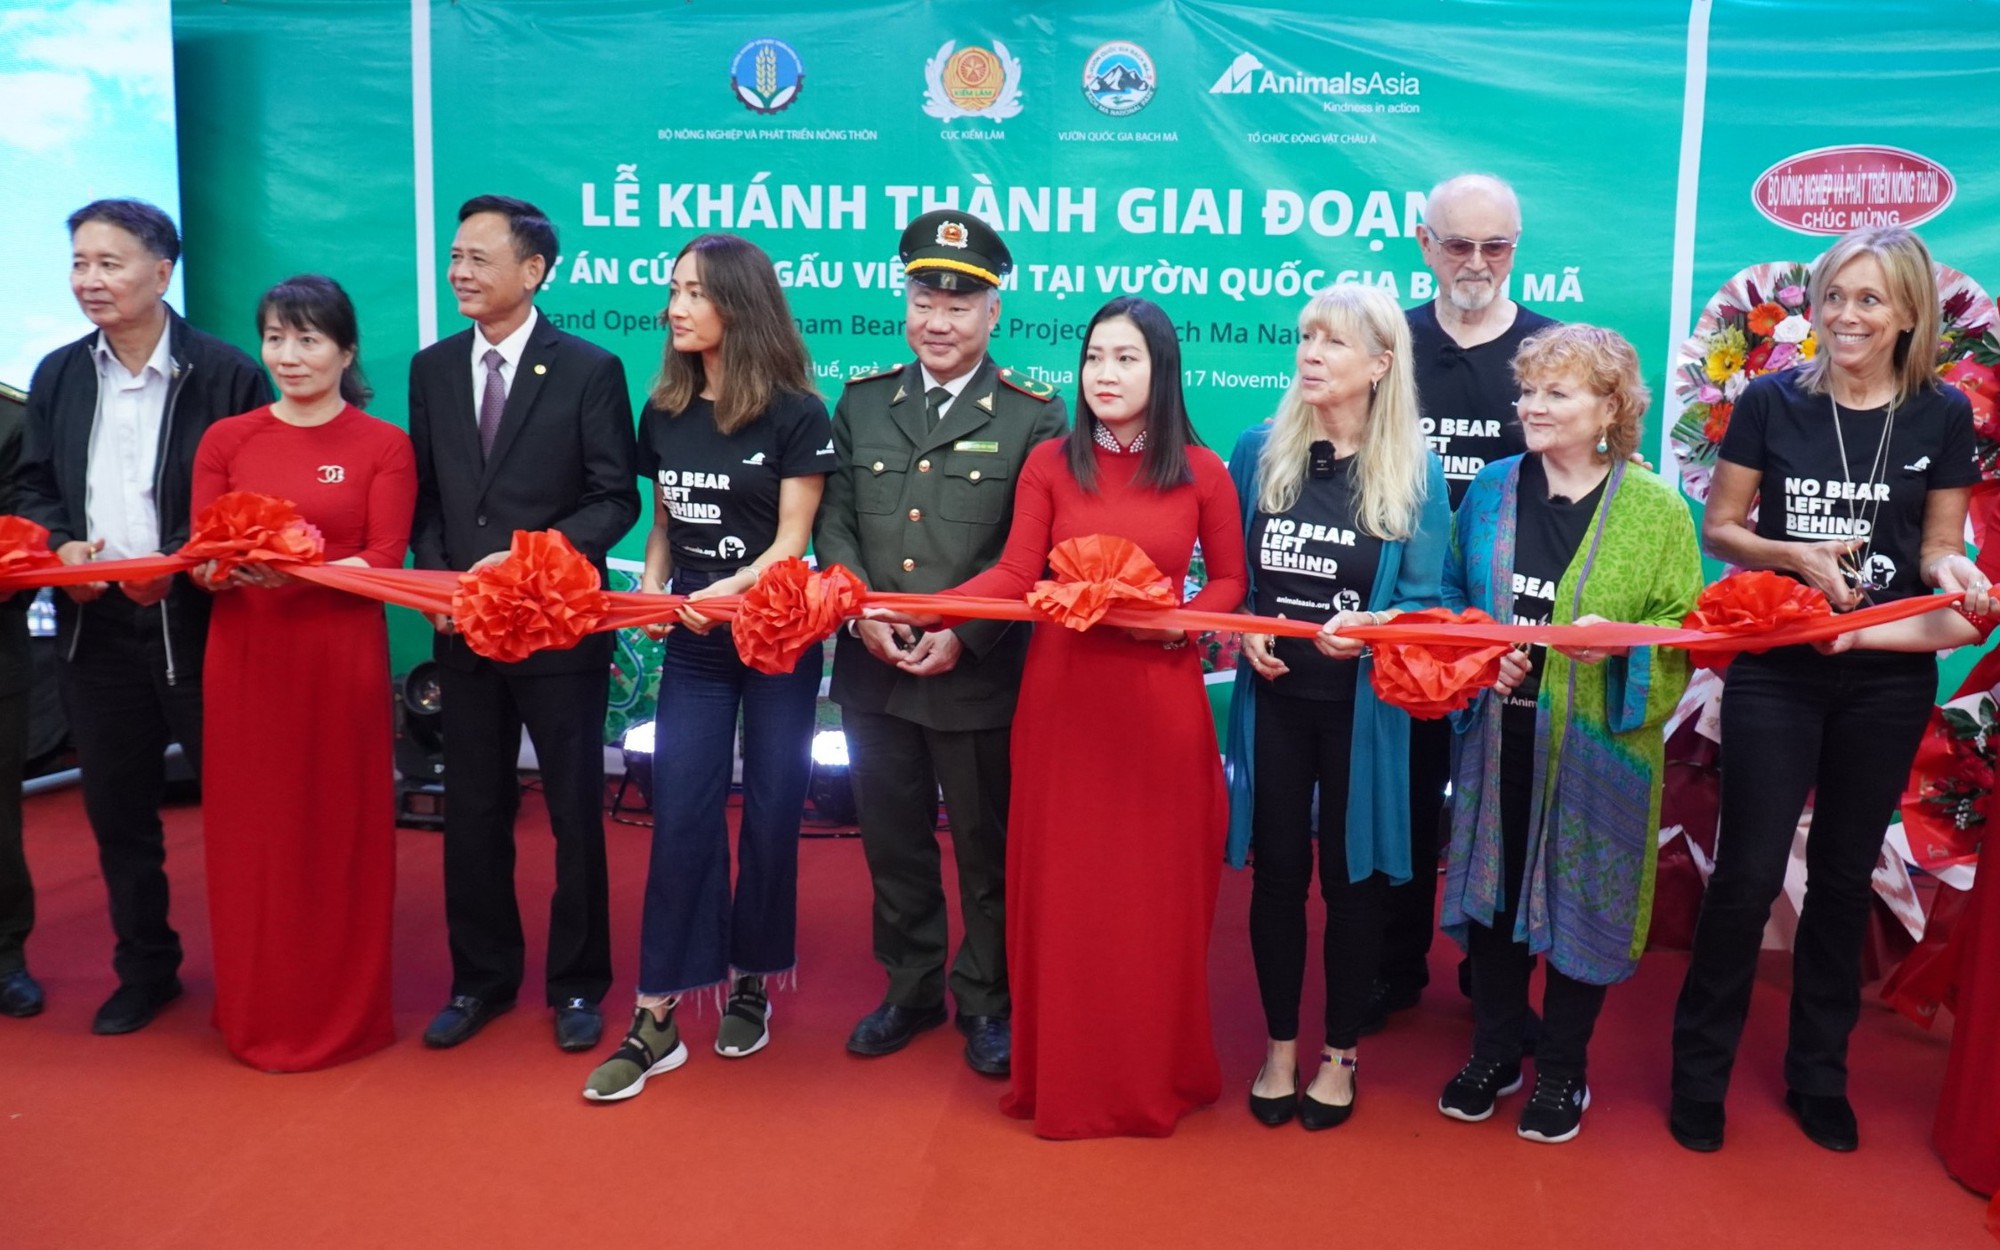 Khánh thành giai đoạn I Trung tâm cứu hộ gấu Việt Nam tại vườn quốc gia Bạch Mã